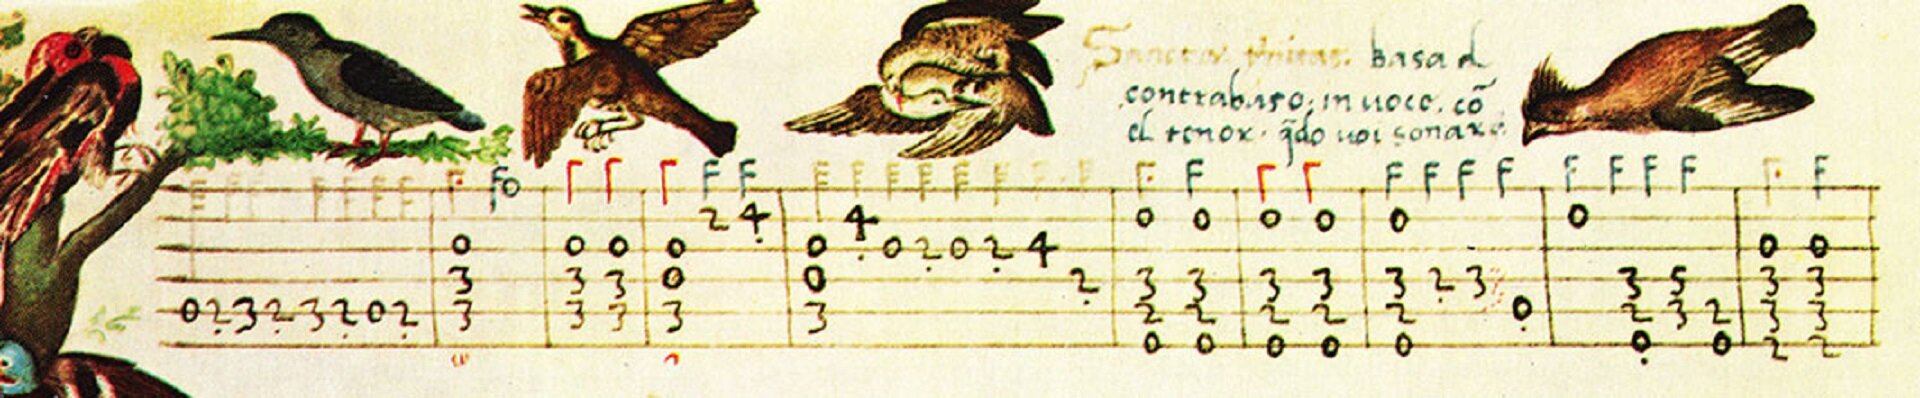 Ilustracja przedstawia tabulaturę lutniową włoską, fragment involatury „Sancta Trinitas” Vincenzo Capiroli. Na pożółkłym papierze widnieją narysowane linie ze znacznikami oraz odręczny tekst u góry. Nad tabulaturą namalowane zostały ptaki, natomiast po lewej stronie drzewo.